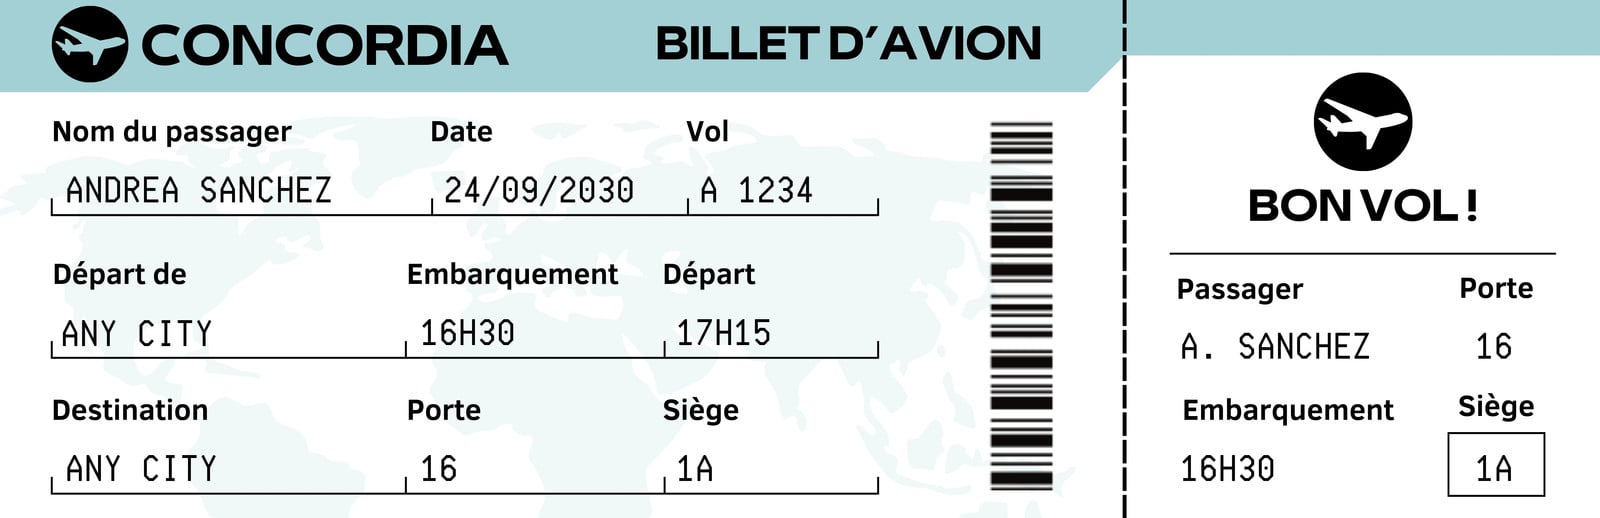 Billet avion personnalisable à gratter Carte d'embarquement surprise  personnalisée annonce voyage originale cadeau noel vacances séjour -   France